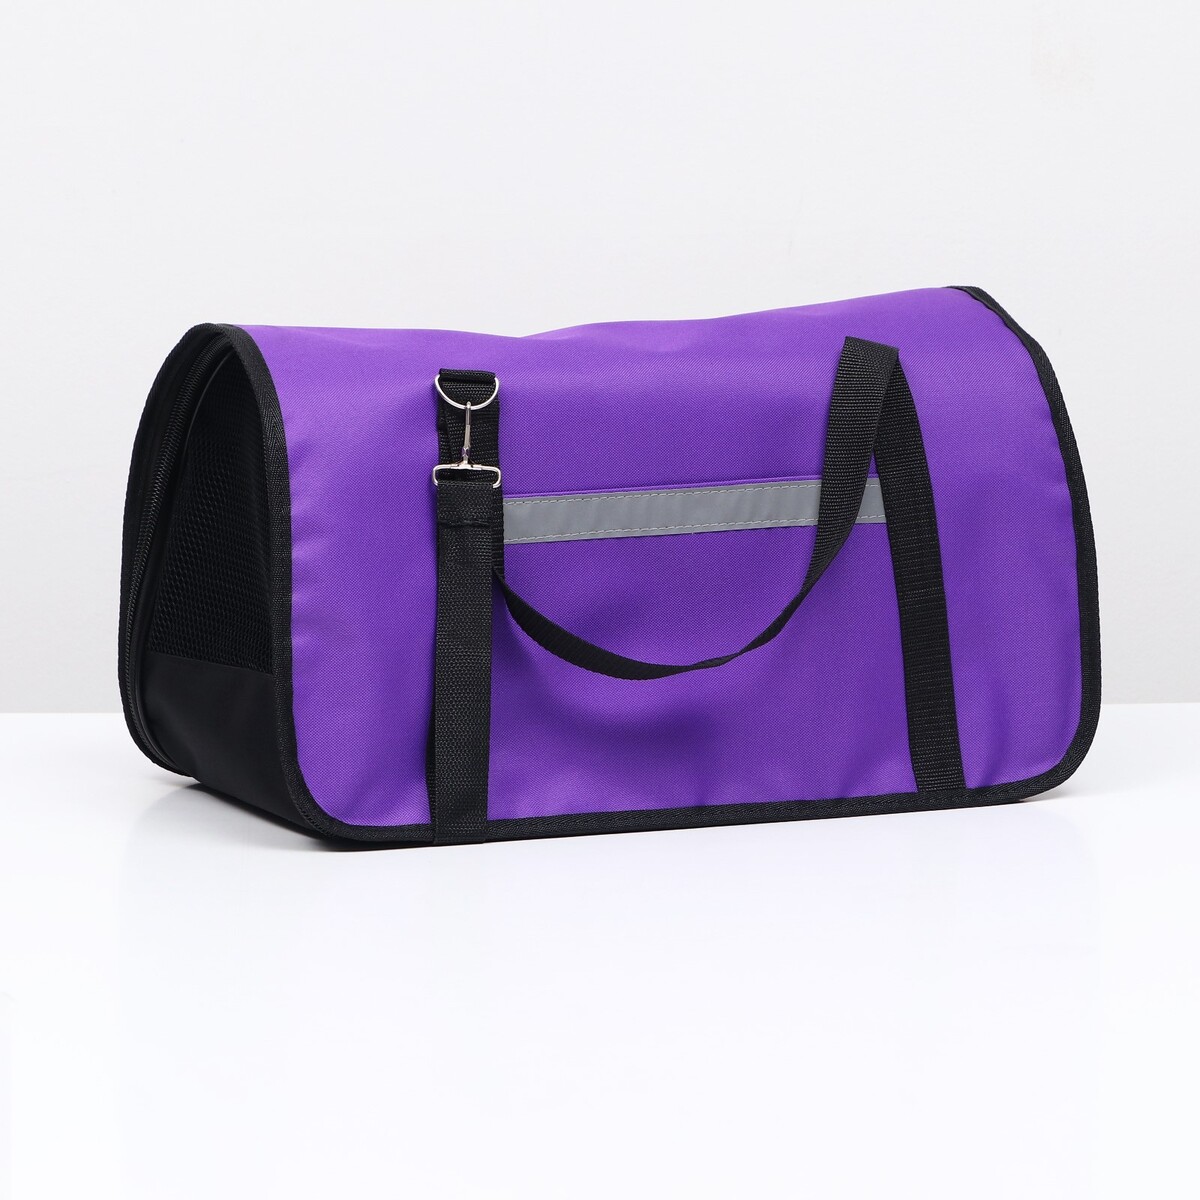 Переноска для животных, размер l 50 х 28 х 28 см, фиолетовая сумка переноска для животных оксфорд 39 х 19 х 27 см фиолетовая